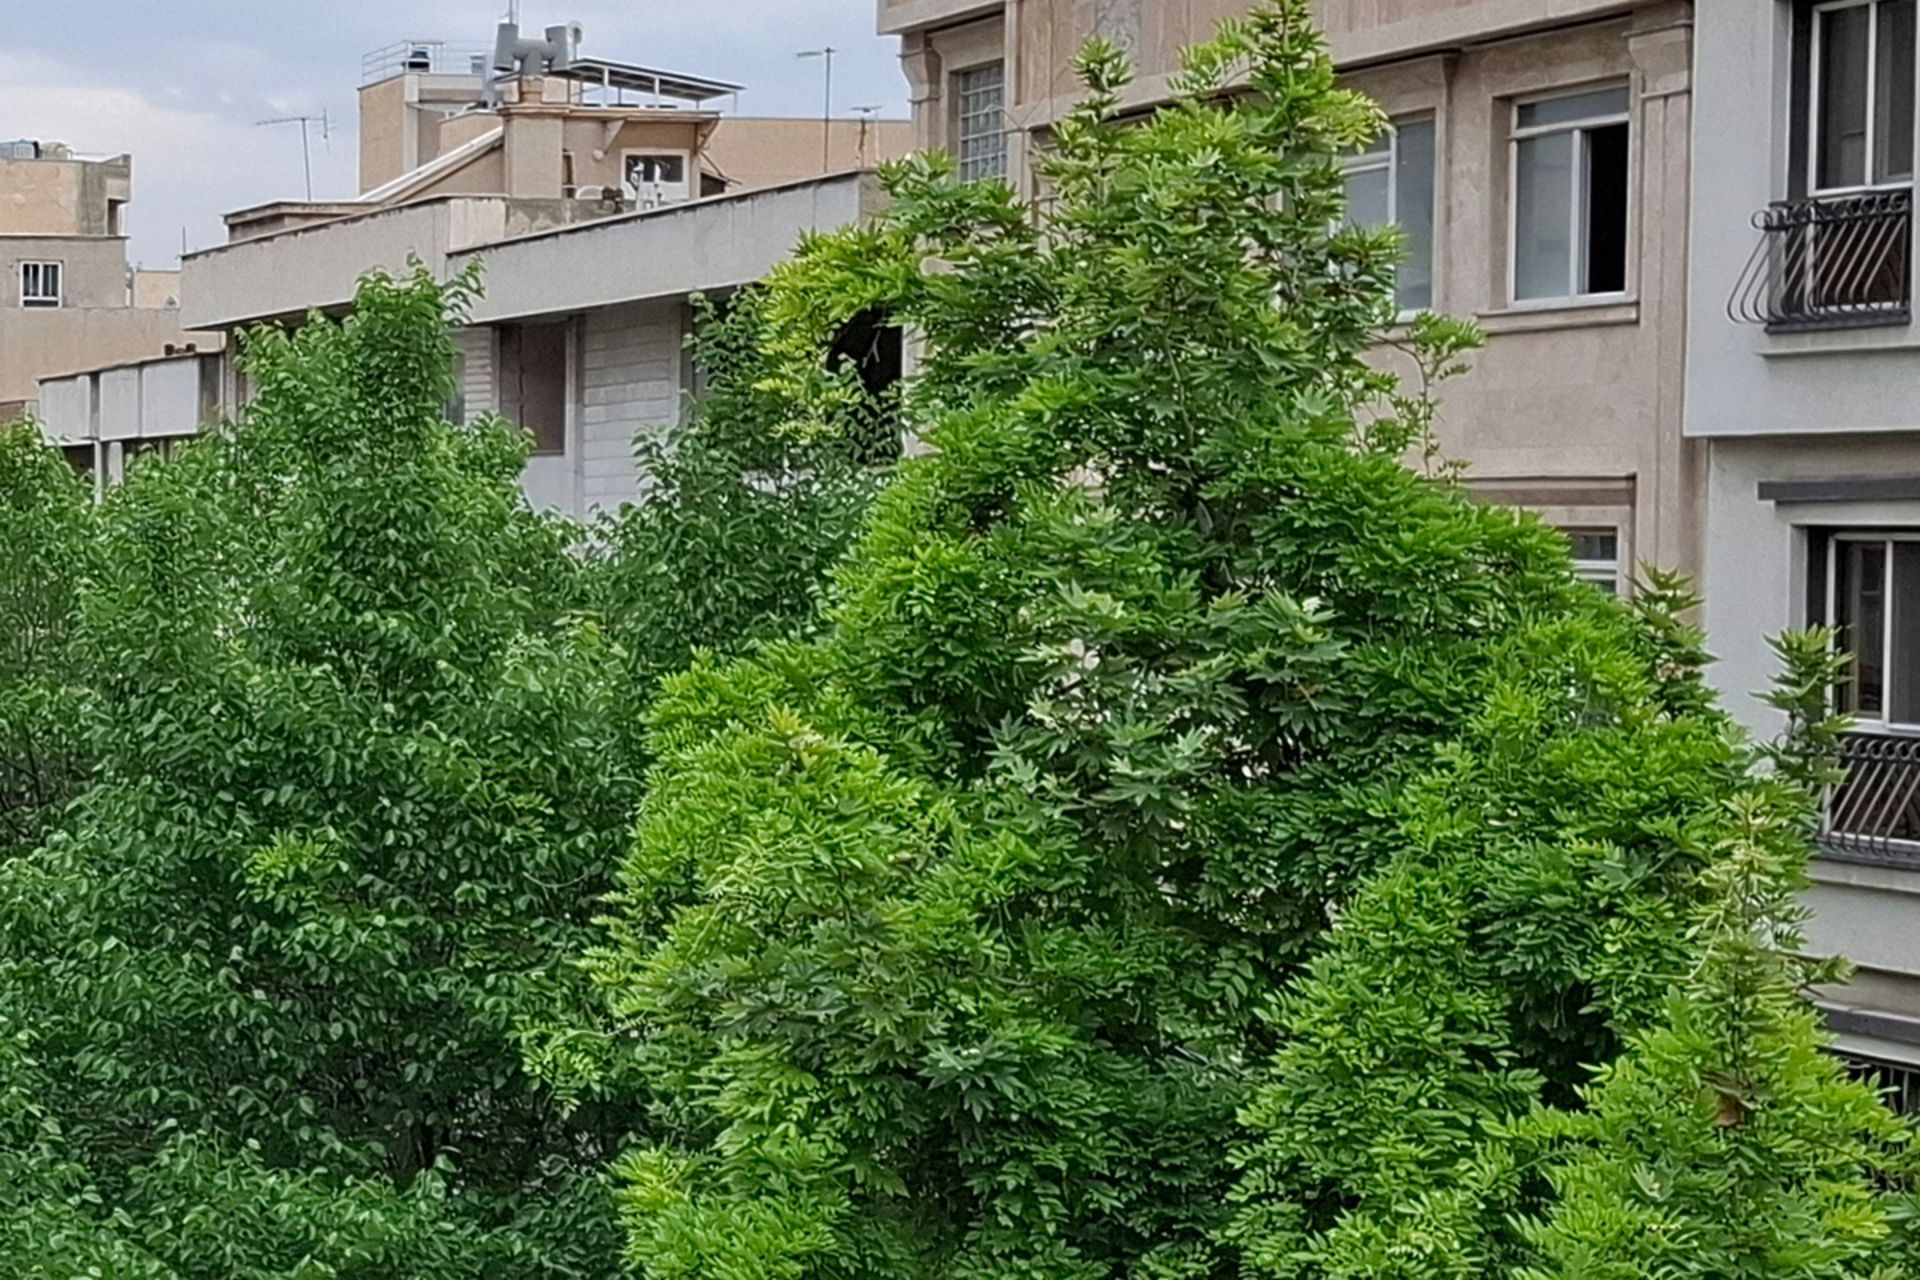 نمونه عکس کراپ شده دوربین اصلی گلکسی A55 در محیط روشن خارجی از یک کوچه با ساختمان ها و درختان